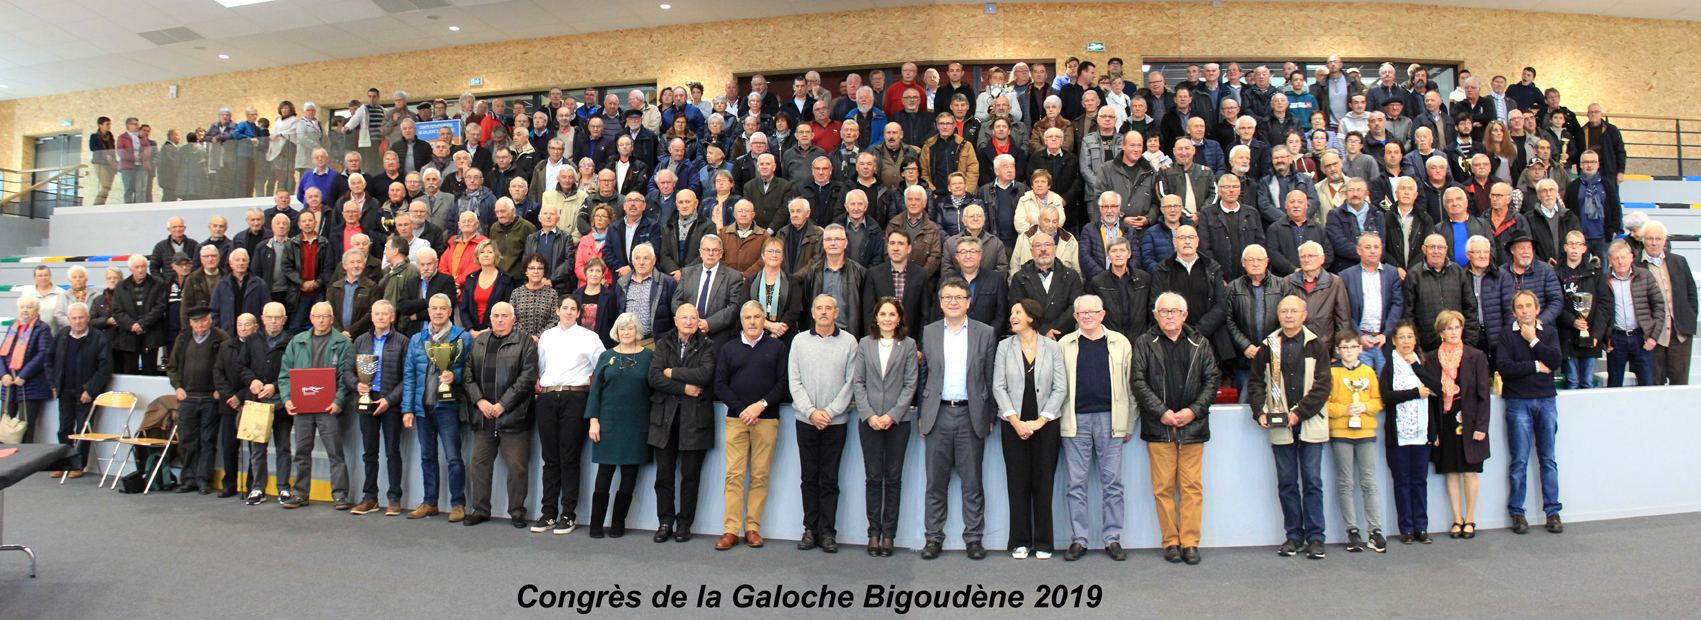 congrès 2019 groupe